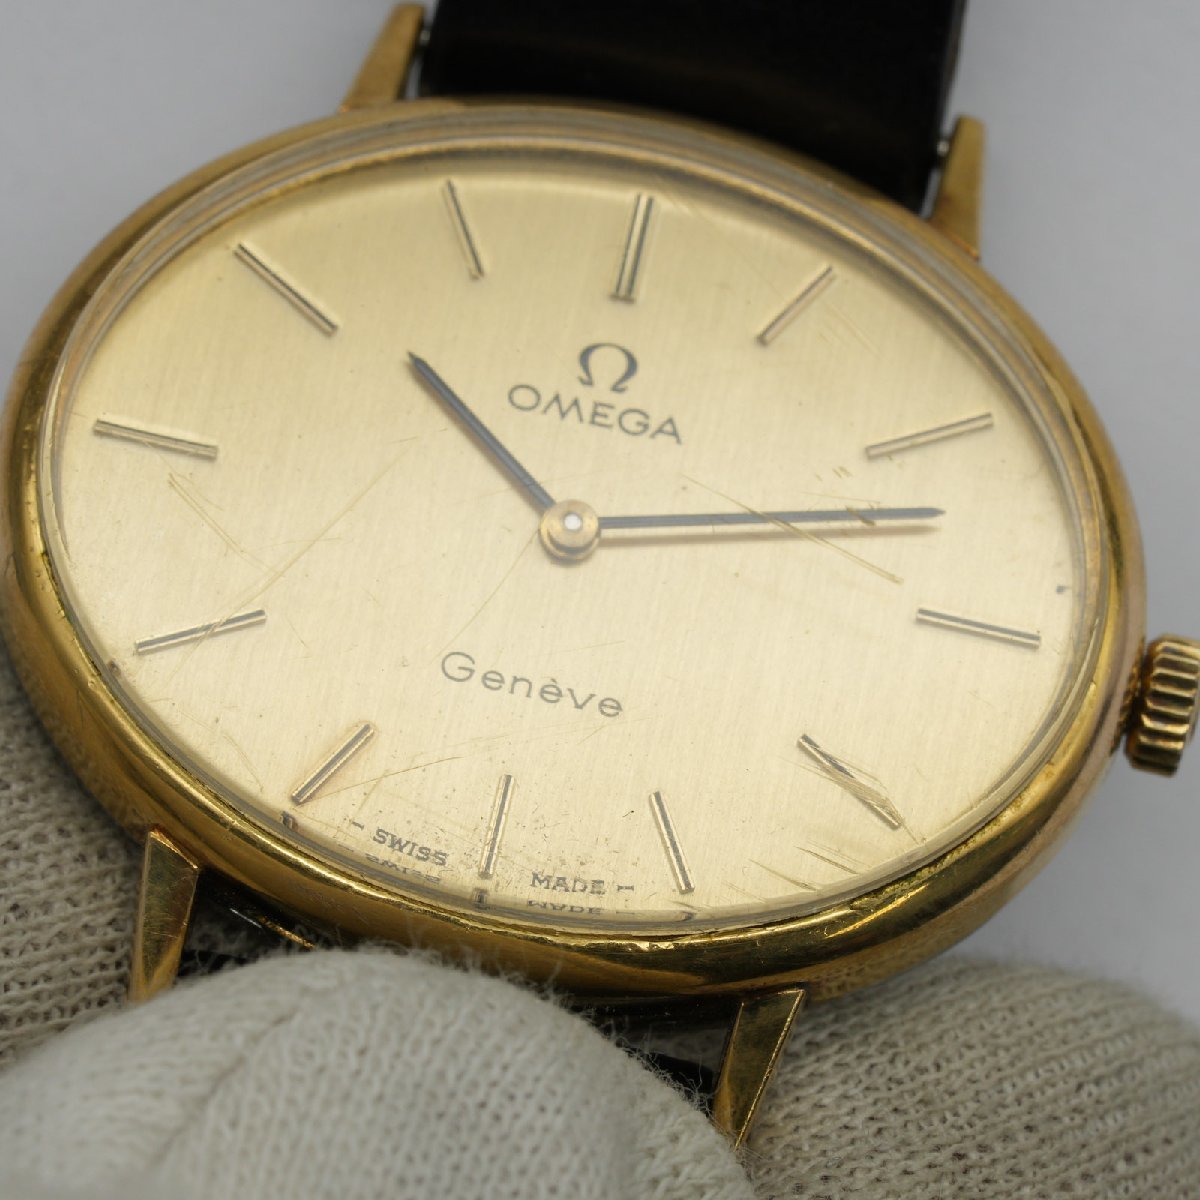 オメガ OMEGA 腕時計 ジュネーブ ヴィンテージ オーバル型 511.417 Cal. 625 手巻き レディース 中古 動作品 [質イコー]_画像6